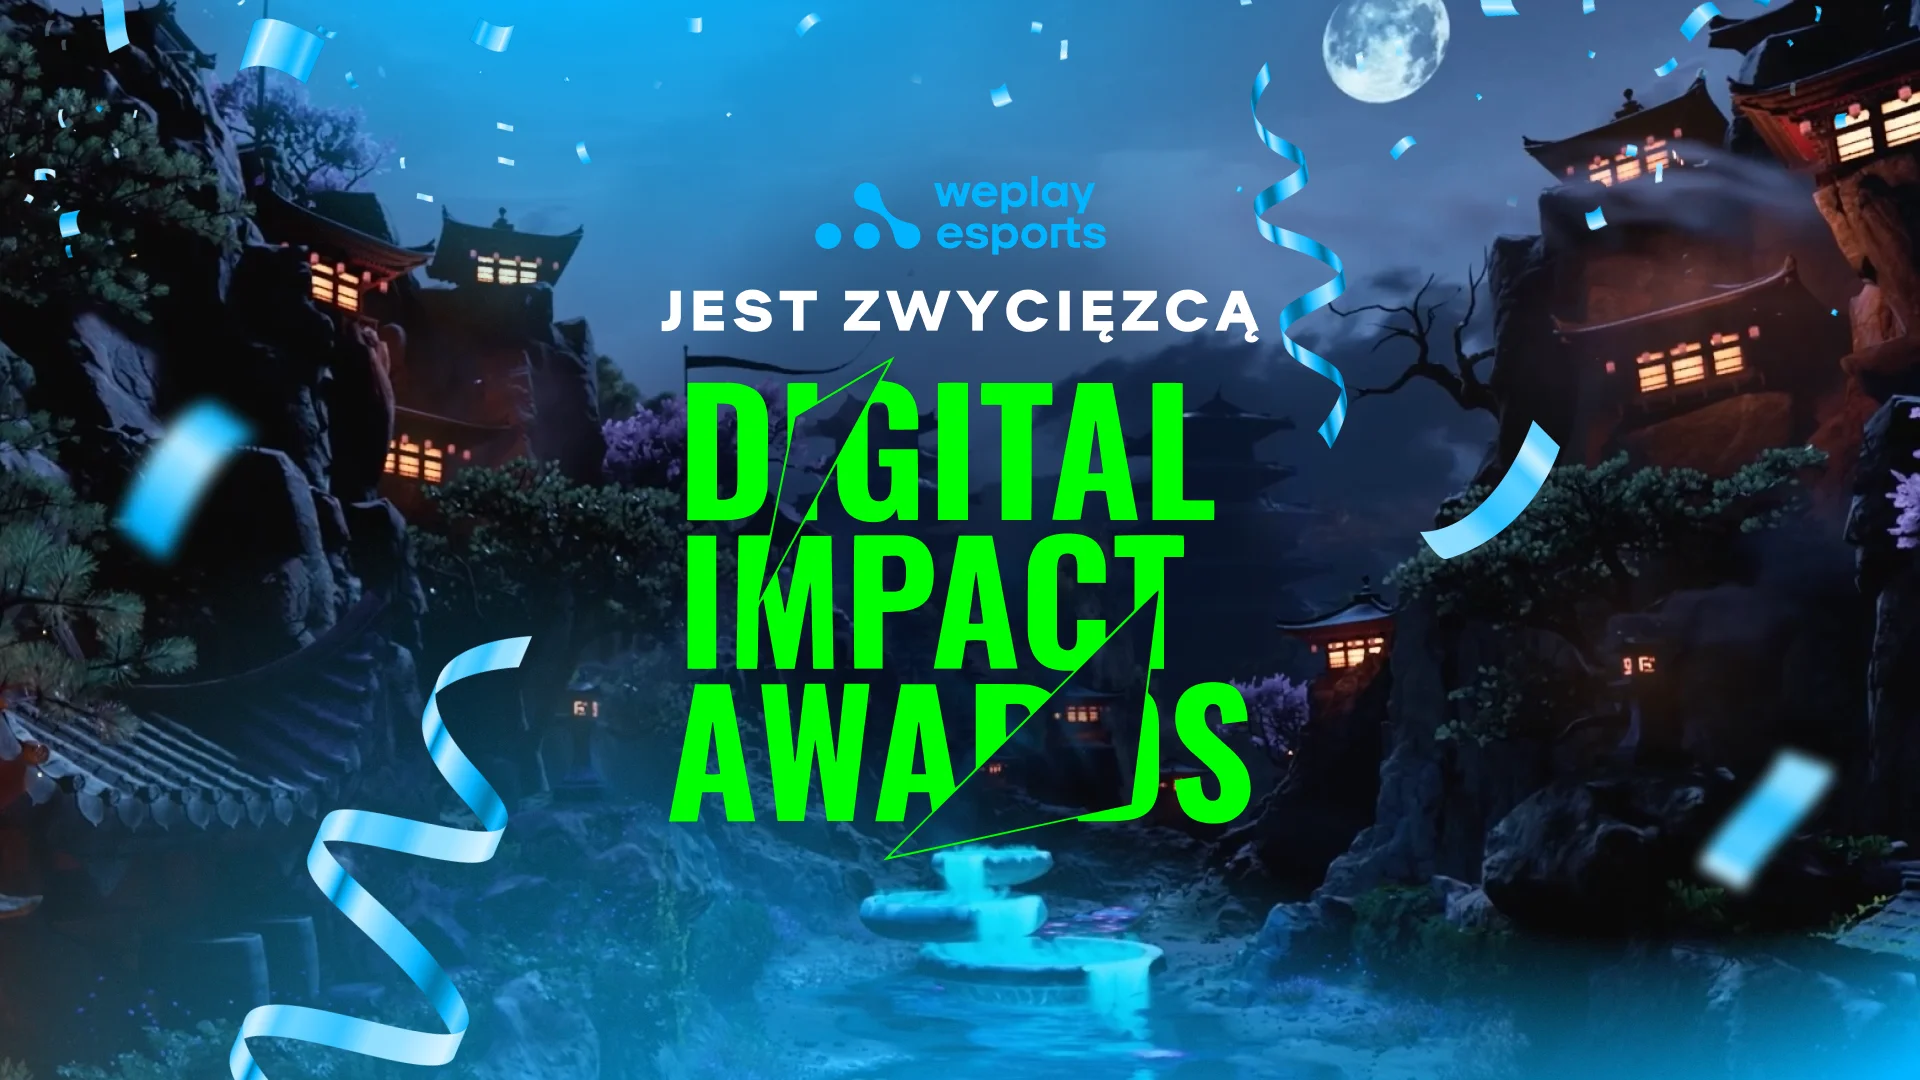 WePlay Esports zdobył brąz w konkursie Digital Impact. Obraz: WePlay Holding